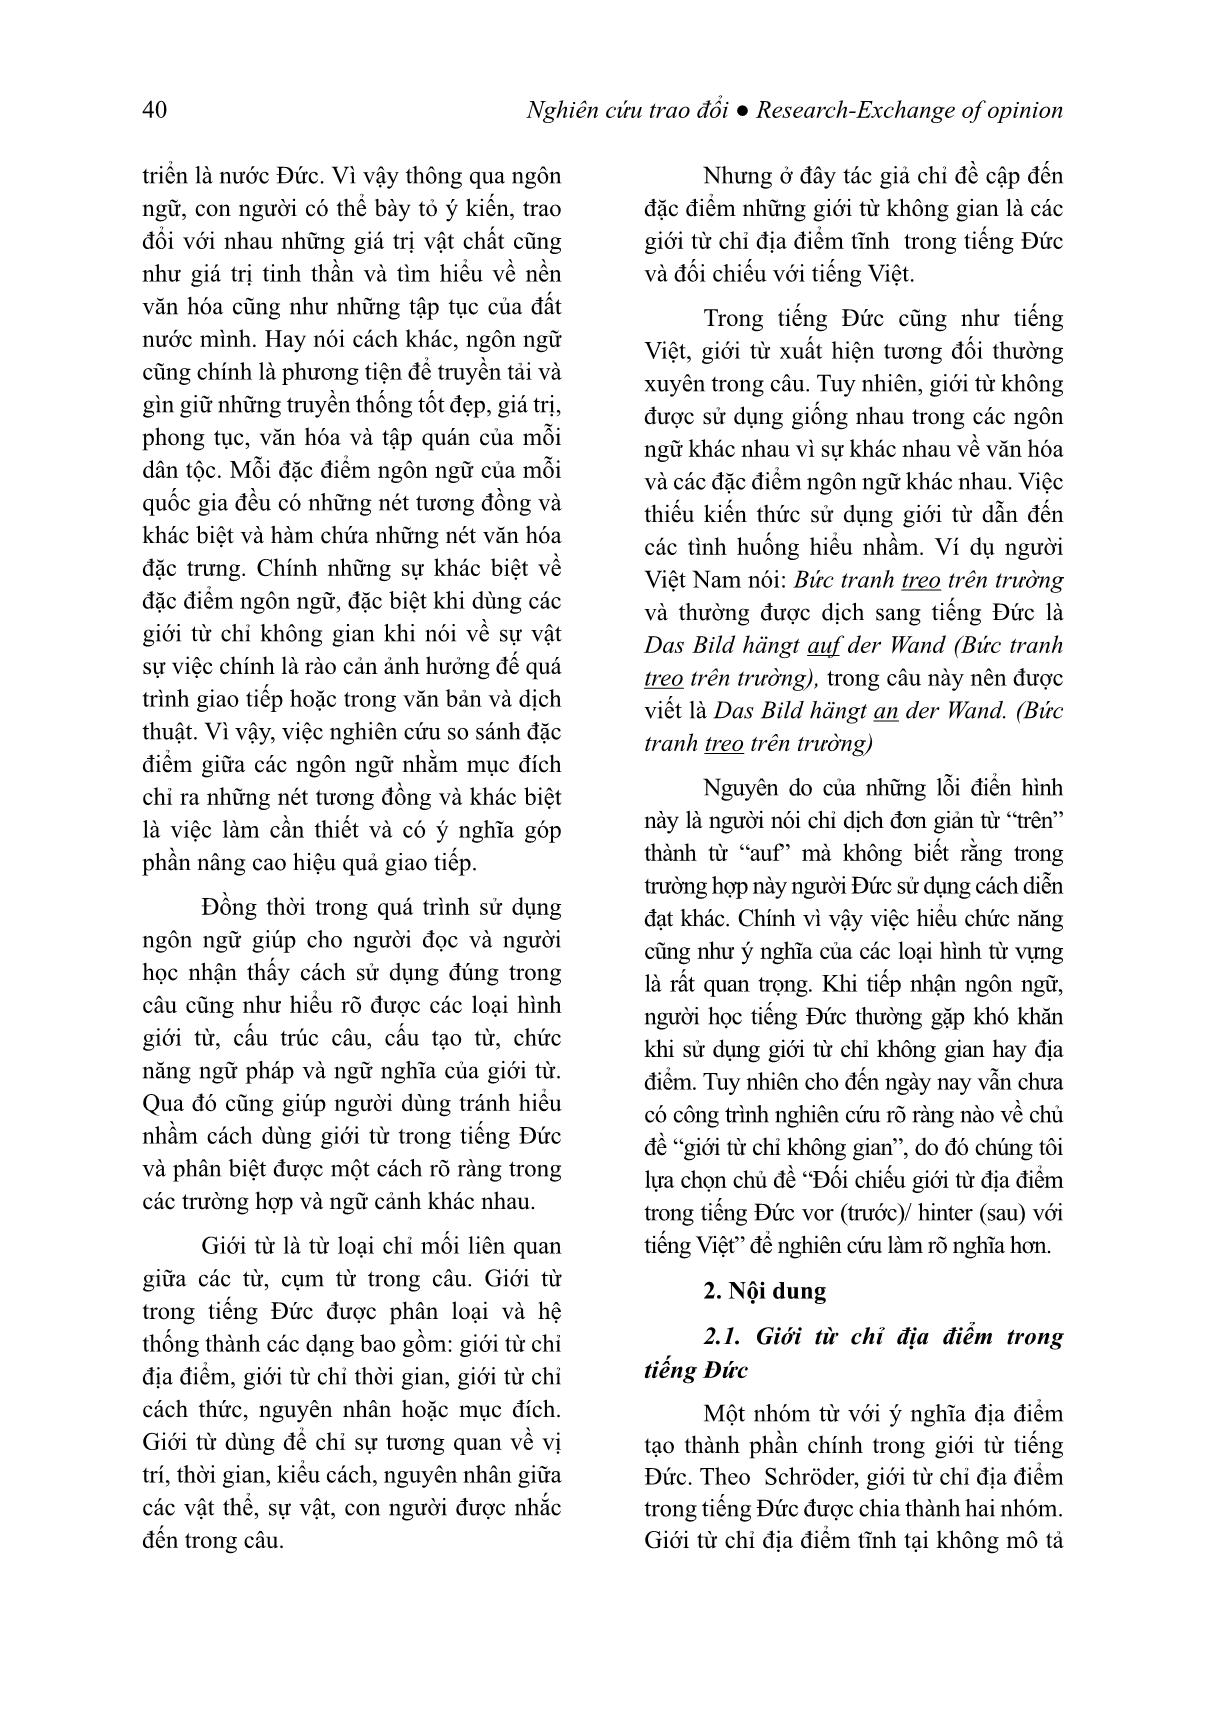 Đối chiếu giới từ địa điểm trong tiếng Đức vor (trước)/ hinter (sau) với tiếng Việt trang 2